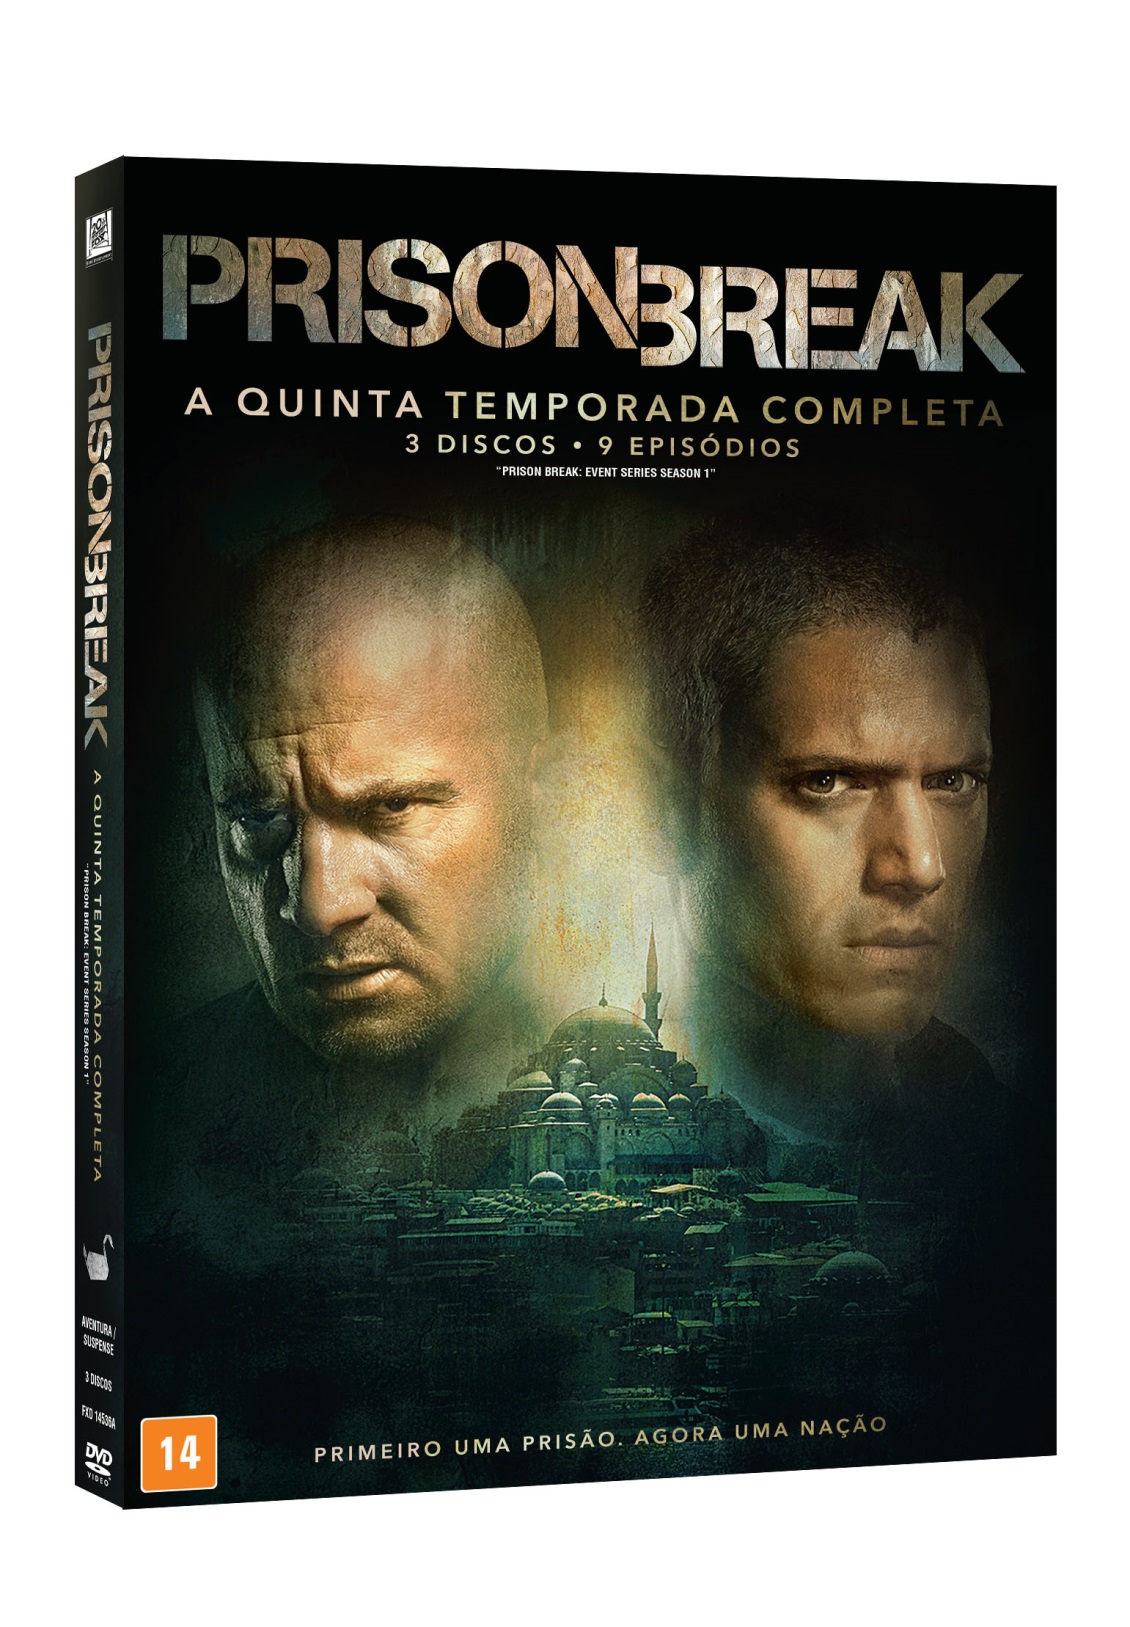 De volta oito anos depois, Prison Break chega em DVD para completar a coleção